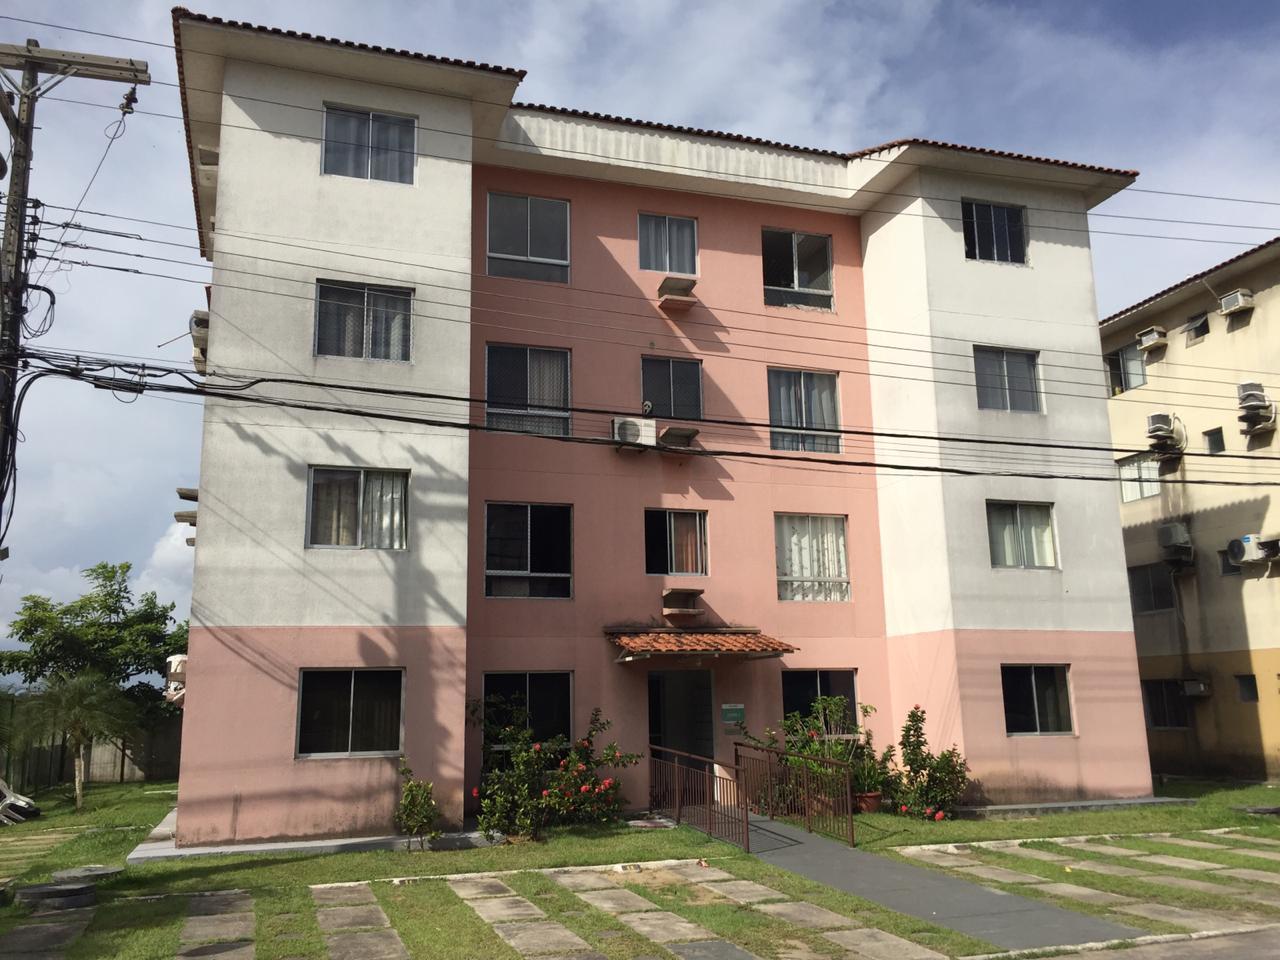 Apartamento condominio Fechado Proximo a Bairreira em Manaus Am